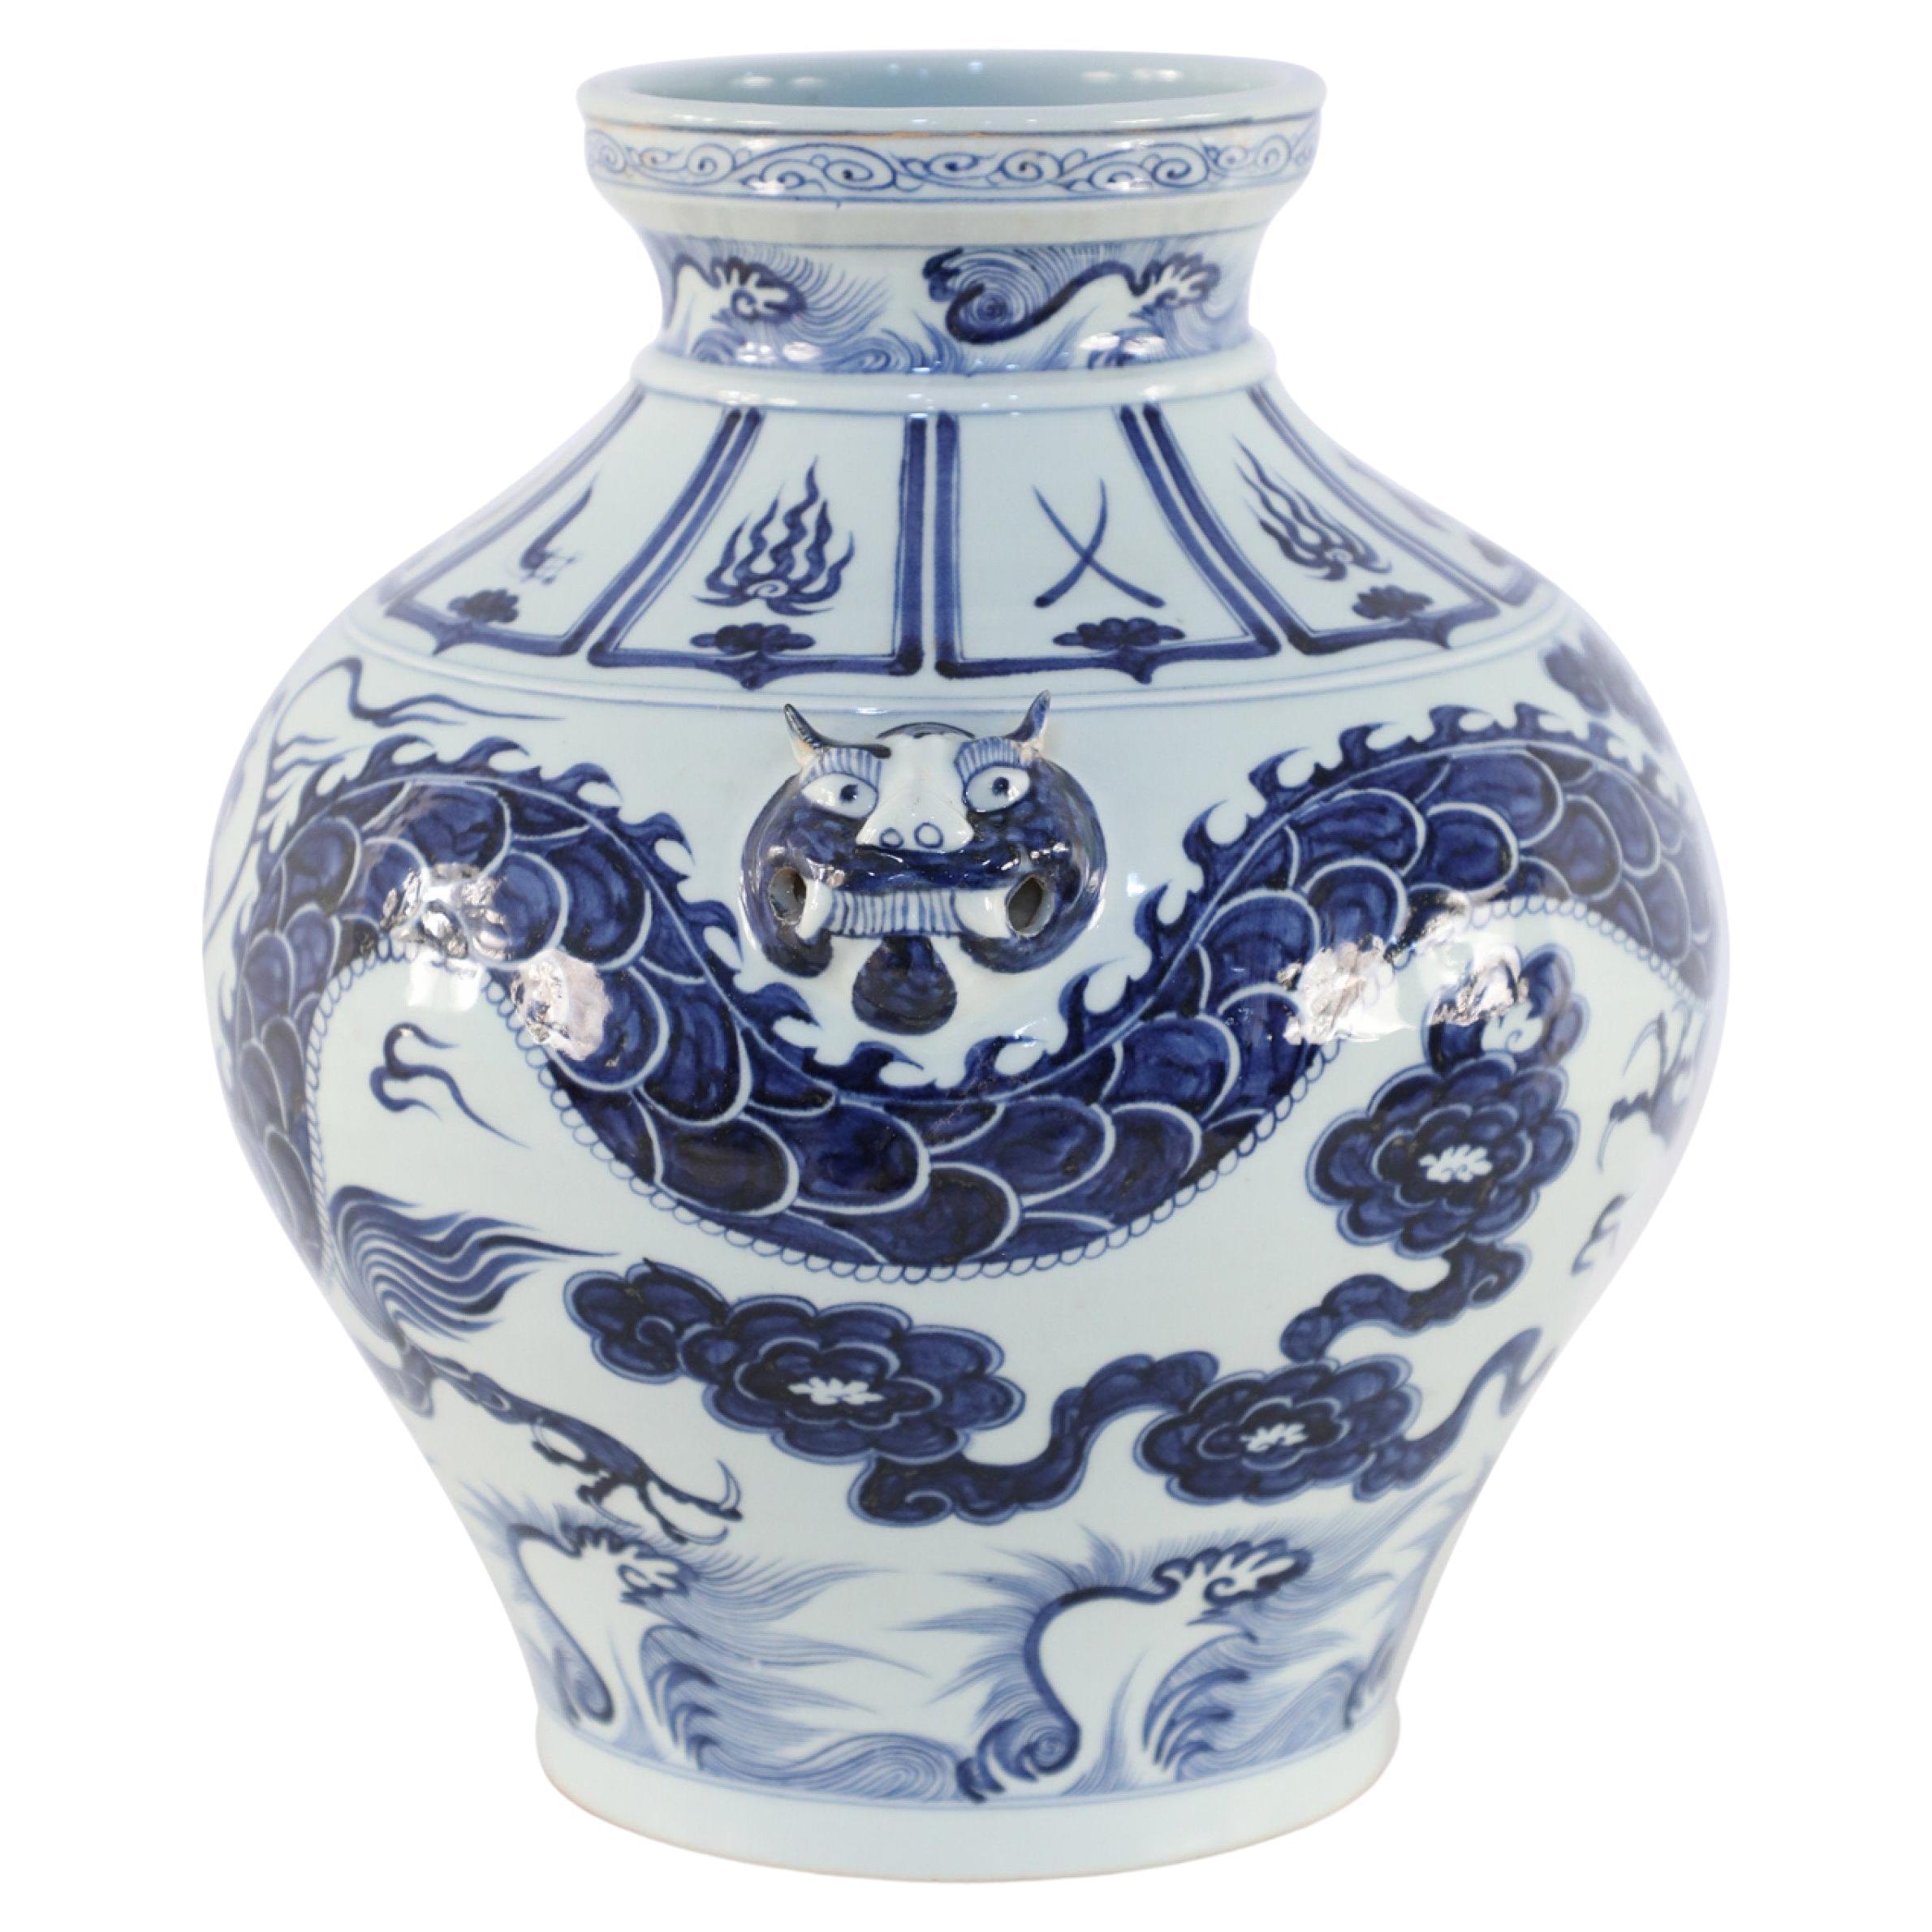 Chinesischer Porzellantopf mit weißem und blauem Drachenmotiv im Yuan-Stil